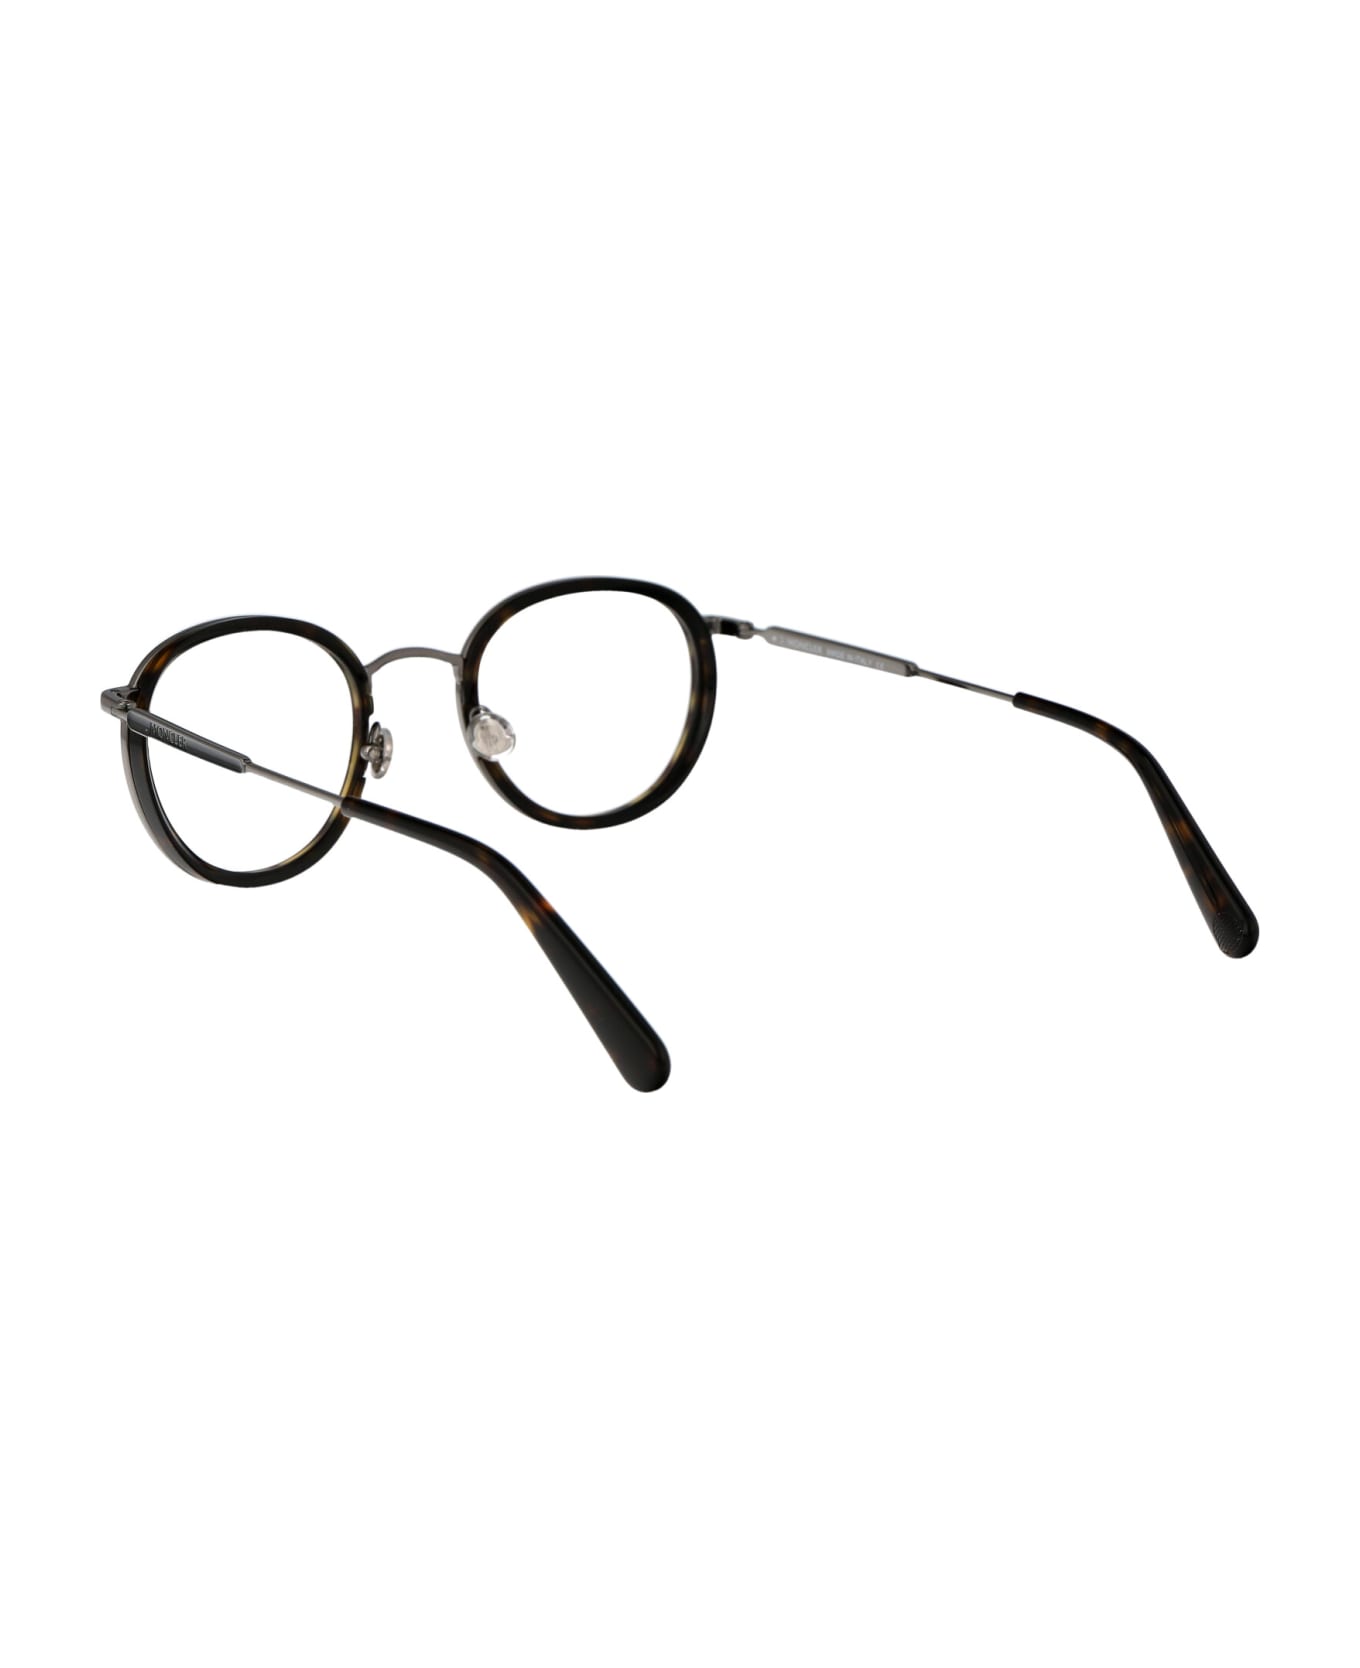 Moncler Eyewear Ml5153 Glasses - 052 Avana Scura アイウェア